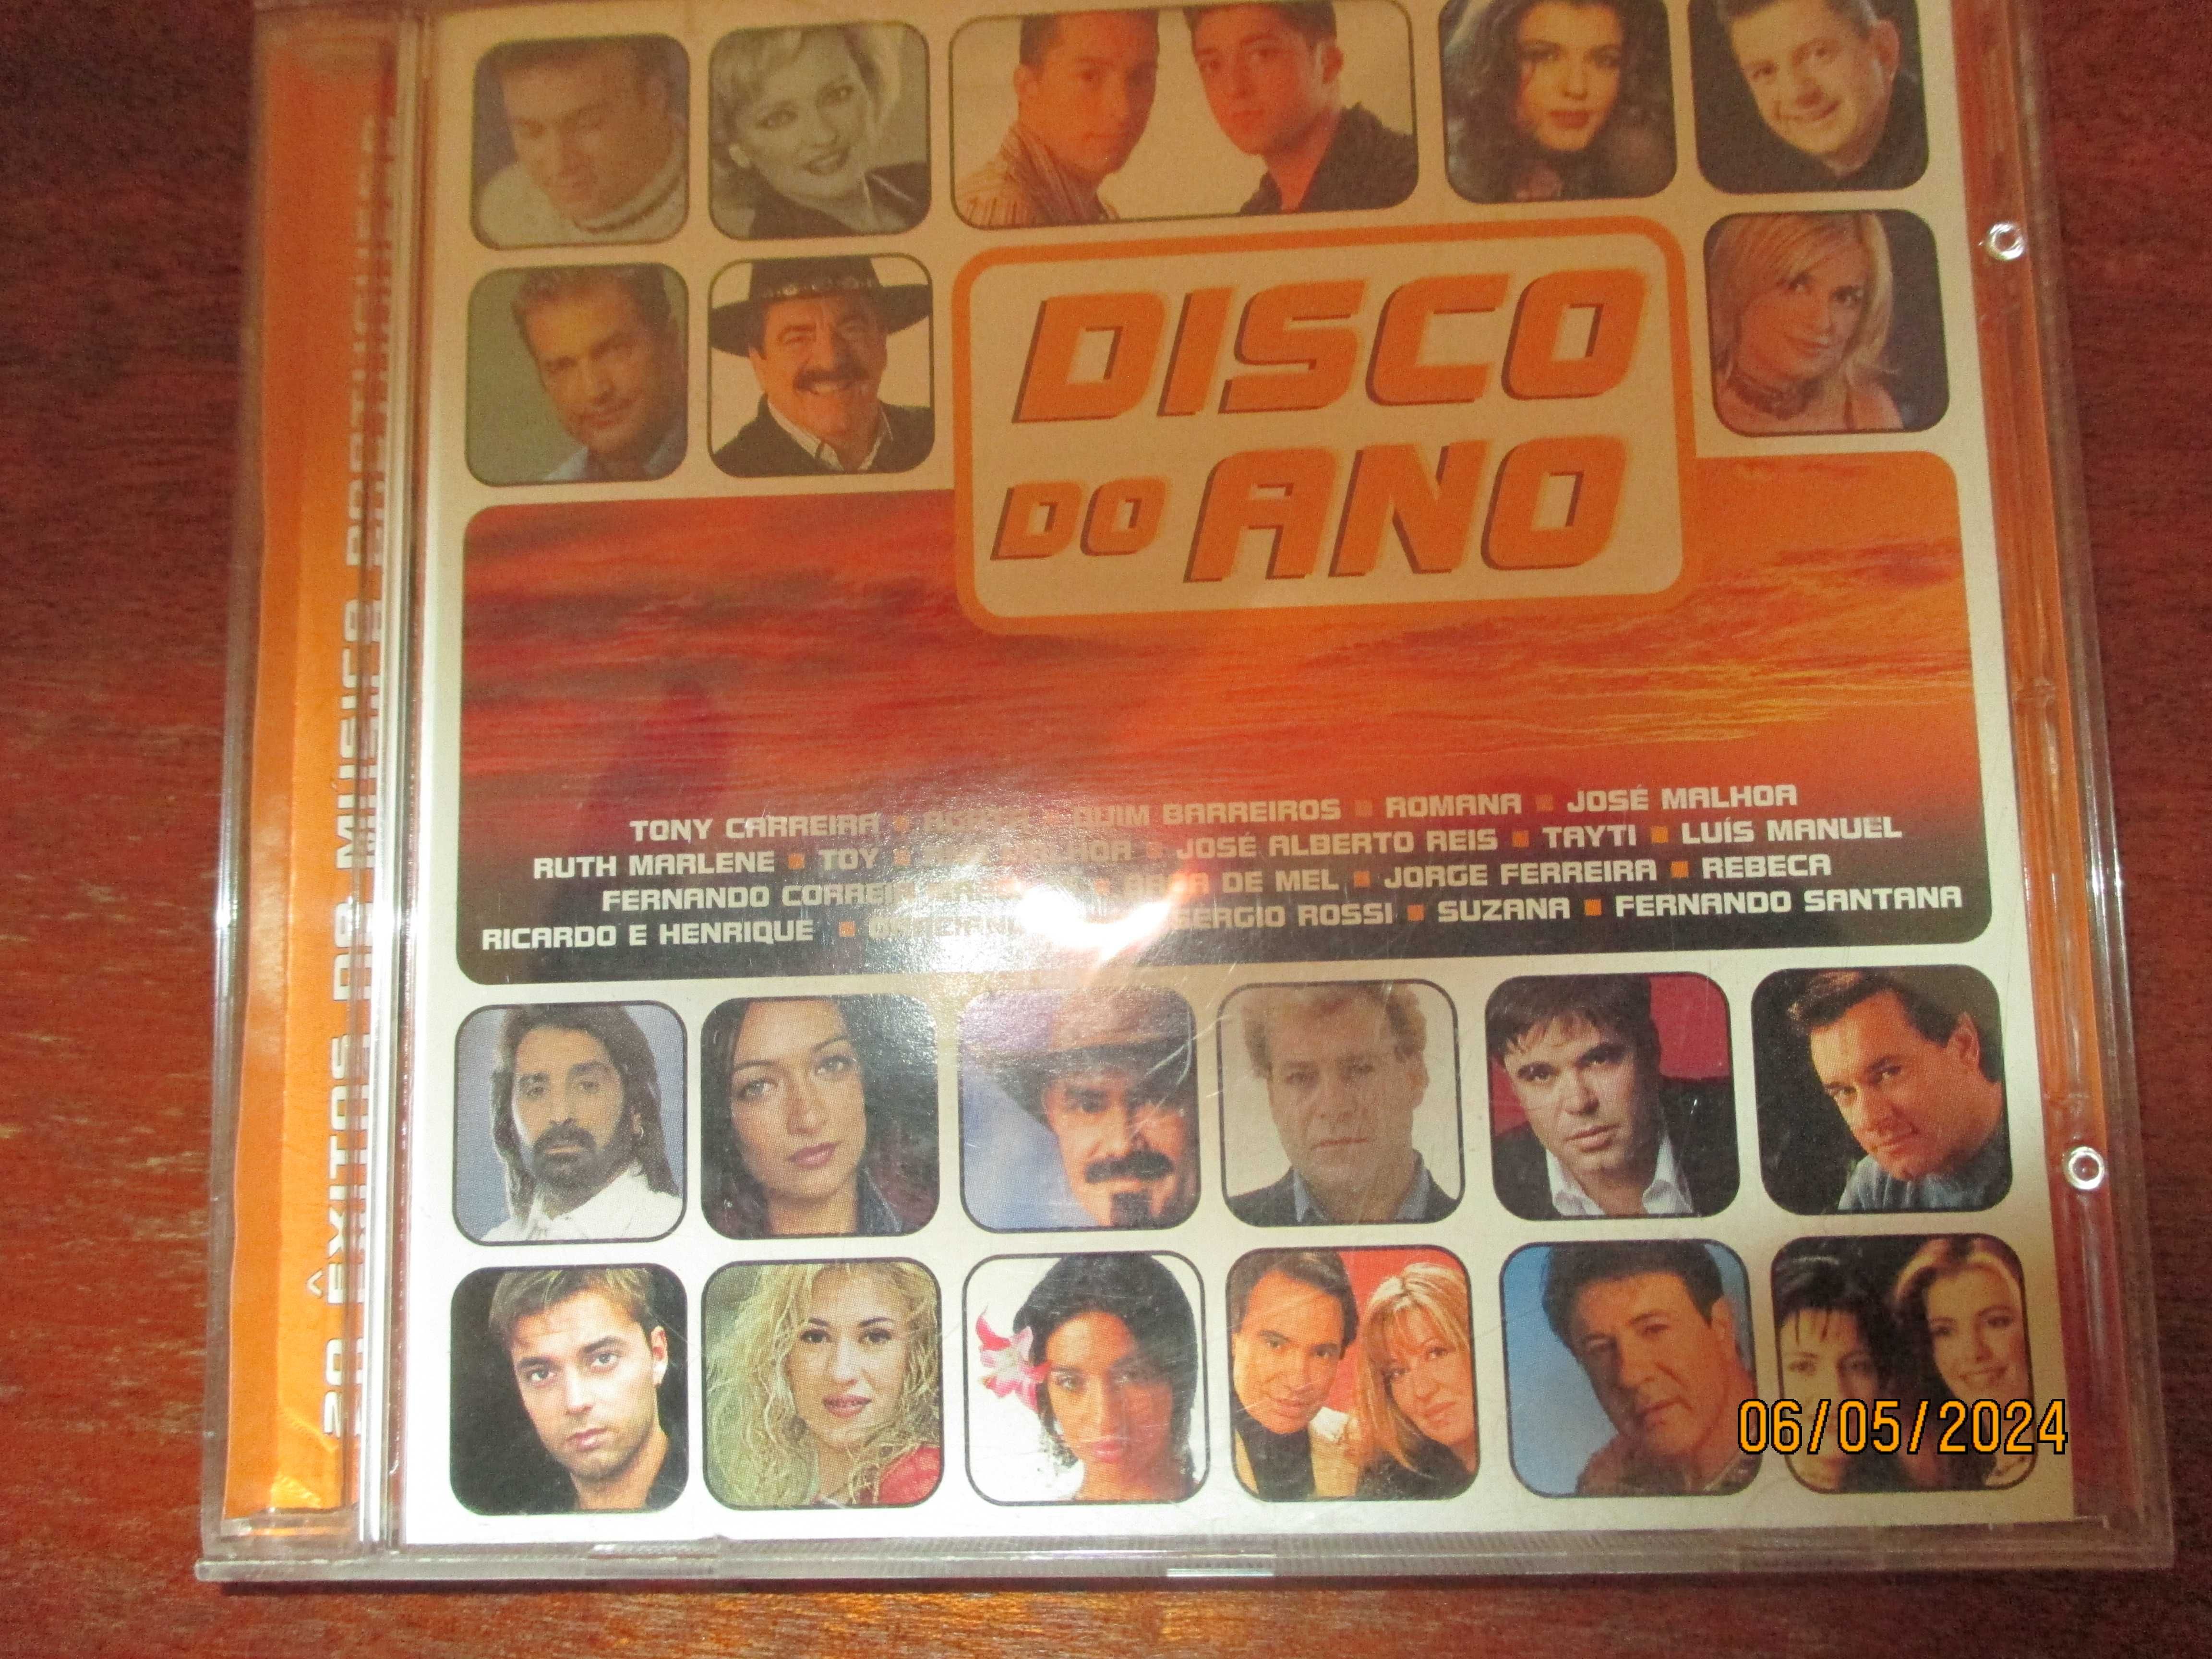 3 cd's - Portugal mix vol. 3 - Portugal em festa - Disco do ano